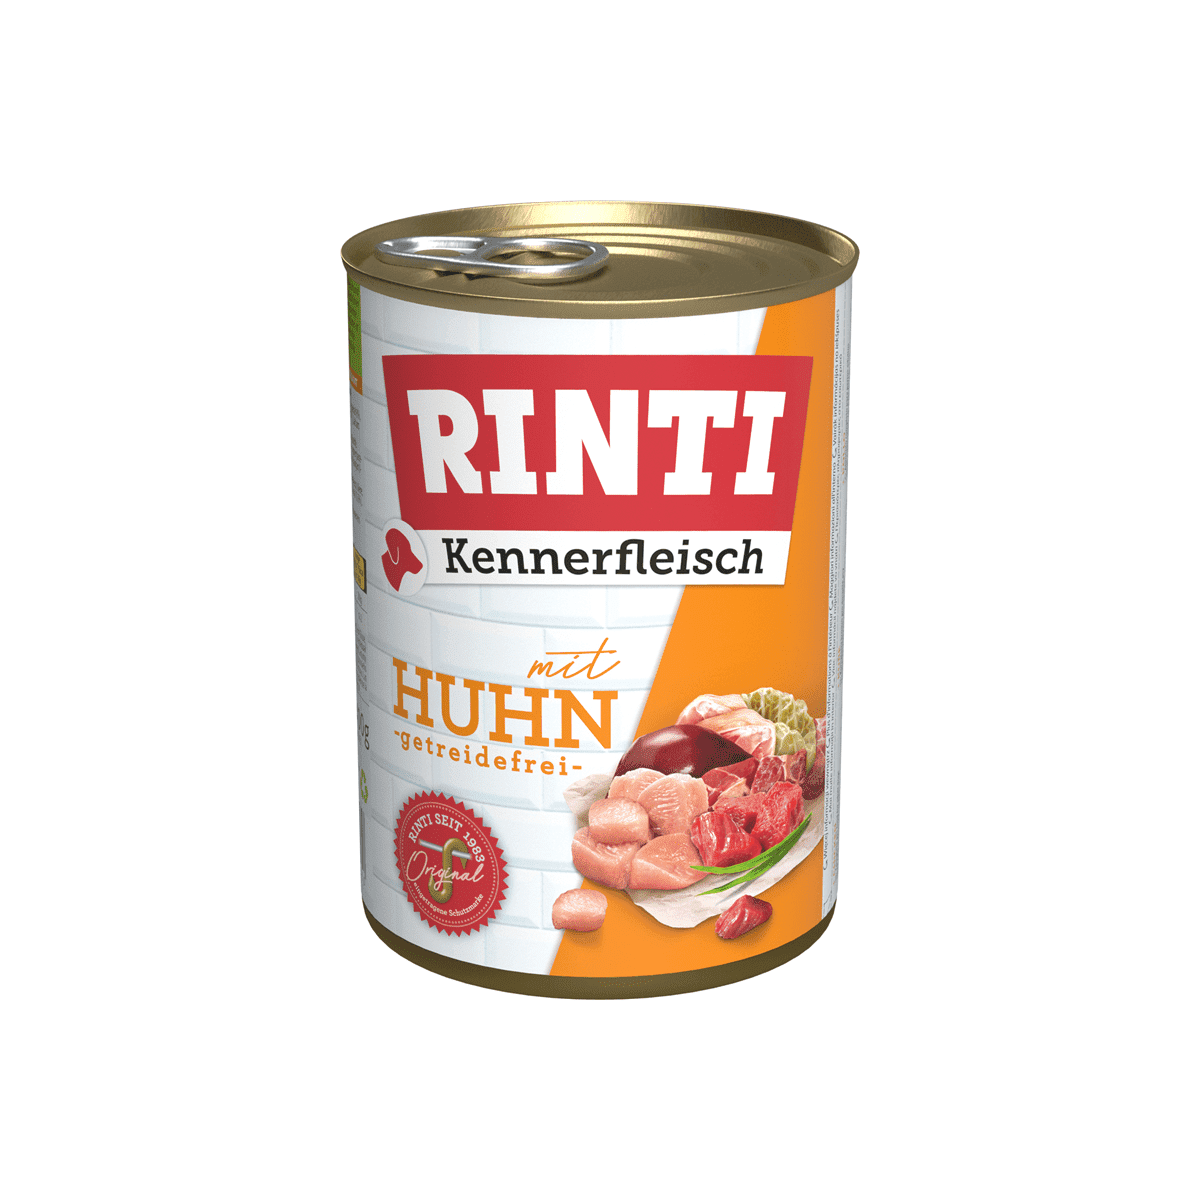 Artikel mit dem Namen Rinti Kennerfleisch Huhn im Shop von zoo.de , dem Onlineshop für nachhaltiges Hundefutter und Katzenfutter.